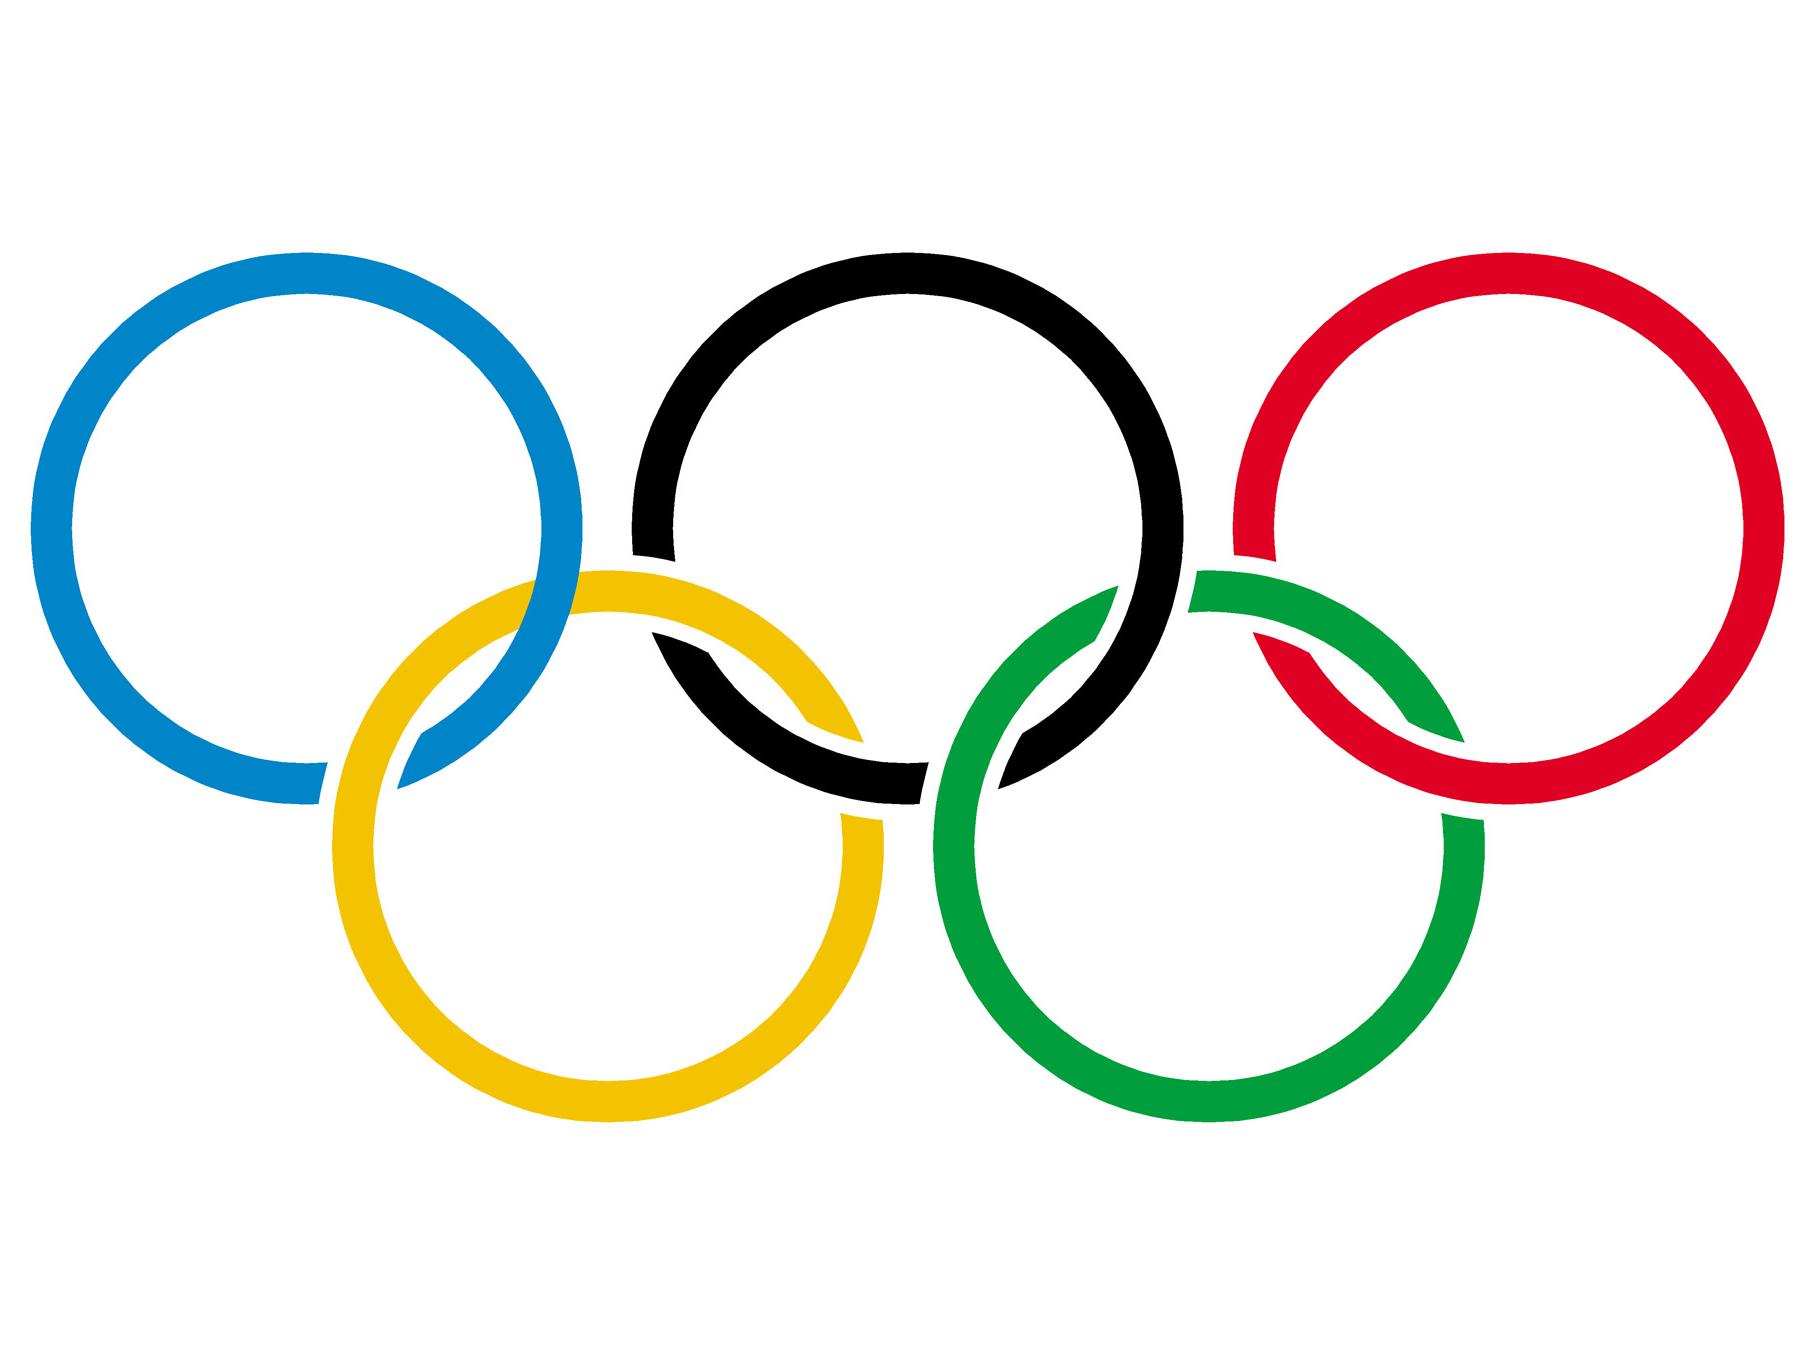 奥运会有120年历史了,你近距离看过奥运奖牌吗